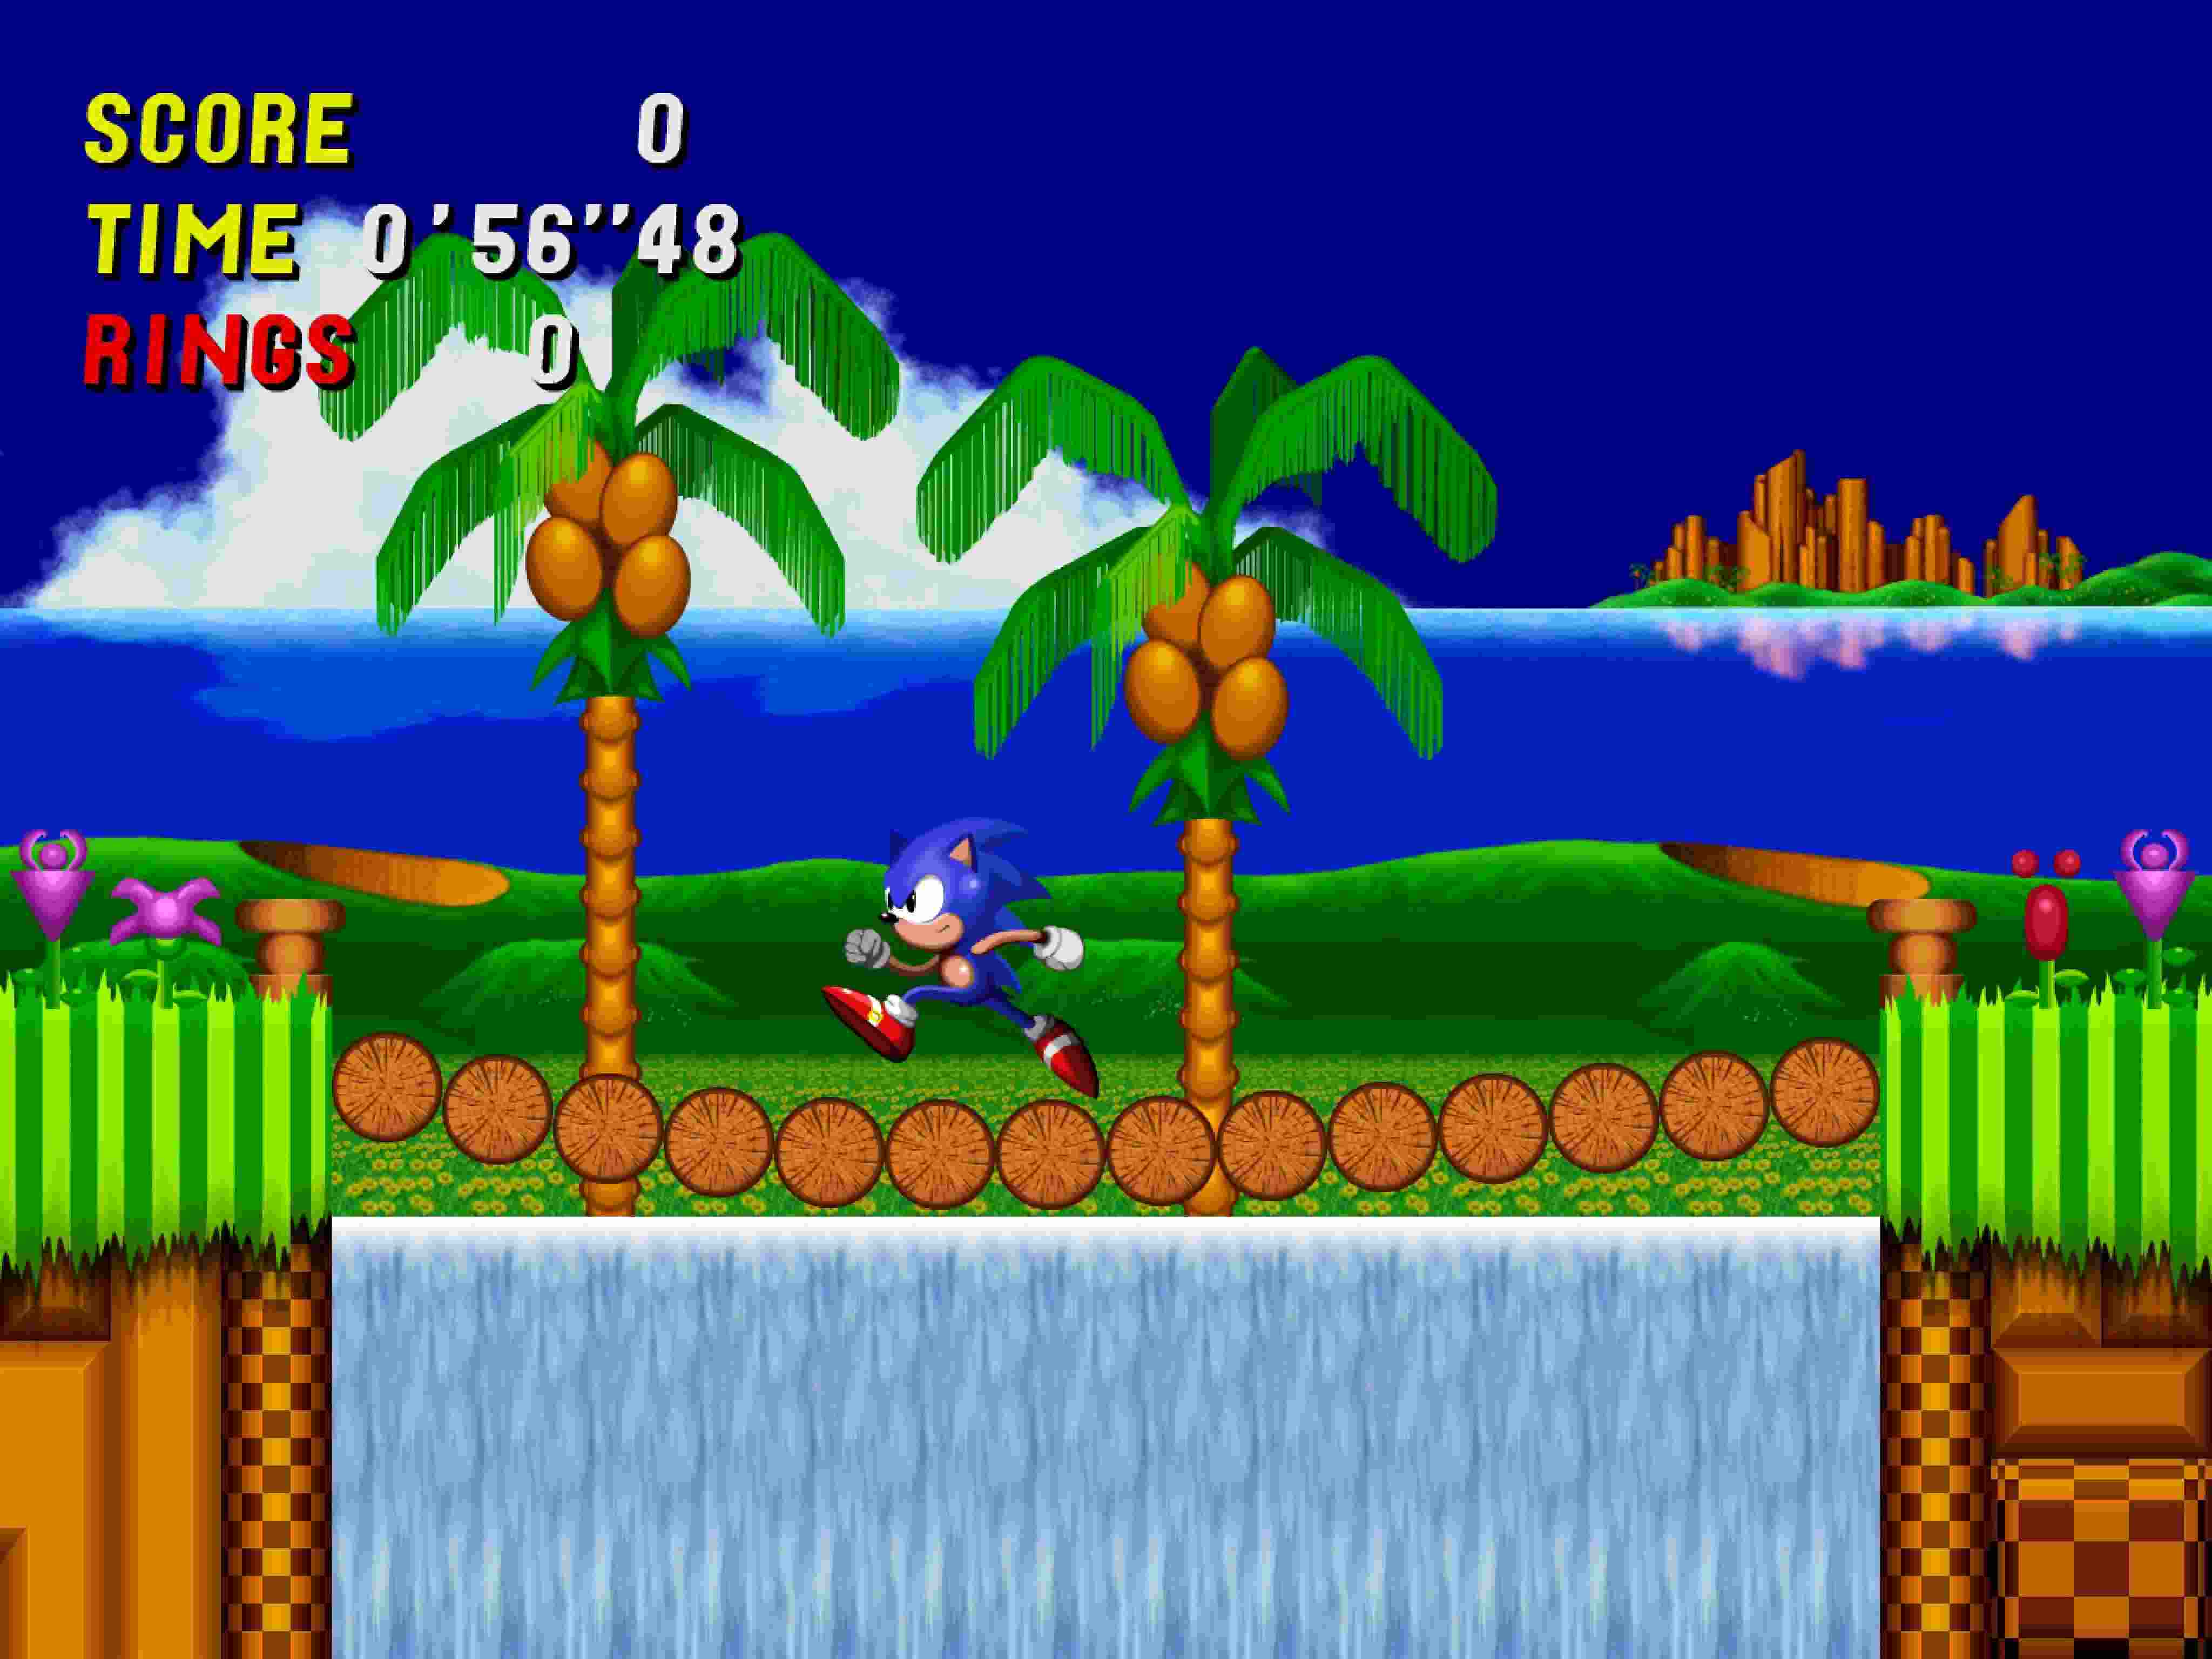 sonic, The, Hedgehog, Video, Games Hình nền HD / Desktop và ...: Hãy biến màn hình của bạn trở nên sống động hơn bao giờ hết với những hình nền HD đầy màu sắc của Sonic, The Hedgehog. Bạn sẽ được tận hưởng những trải nghiệm tuyệt vời khi màn hình máy tính của mình được trang trí bởi những hình ảnh đầy sống động.